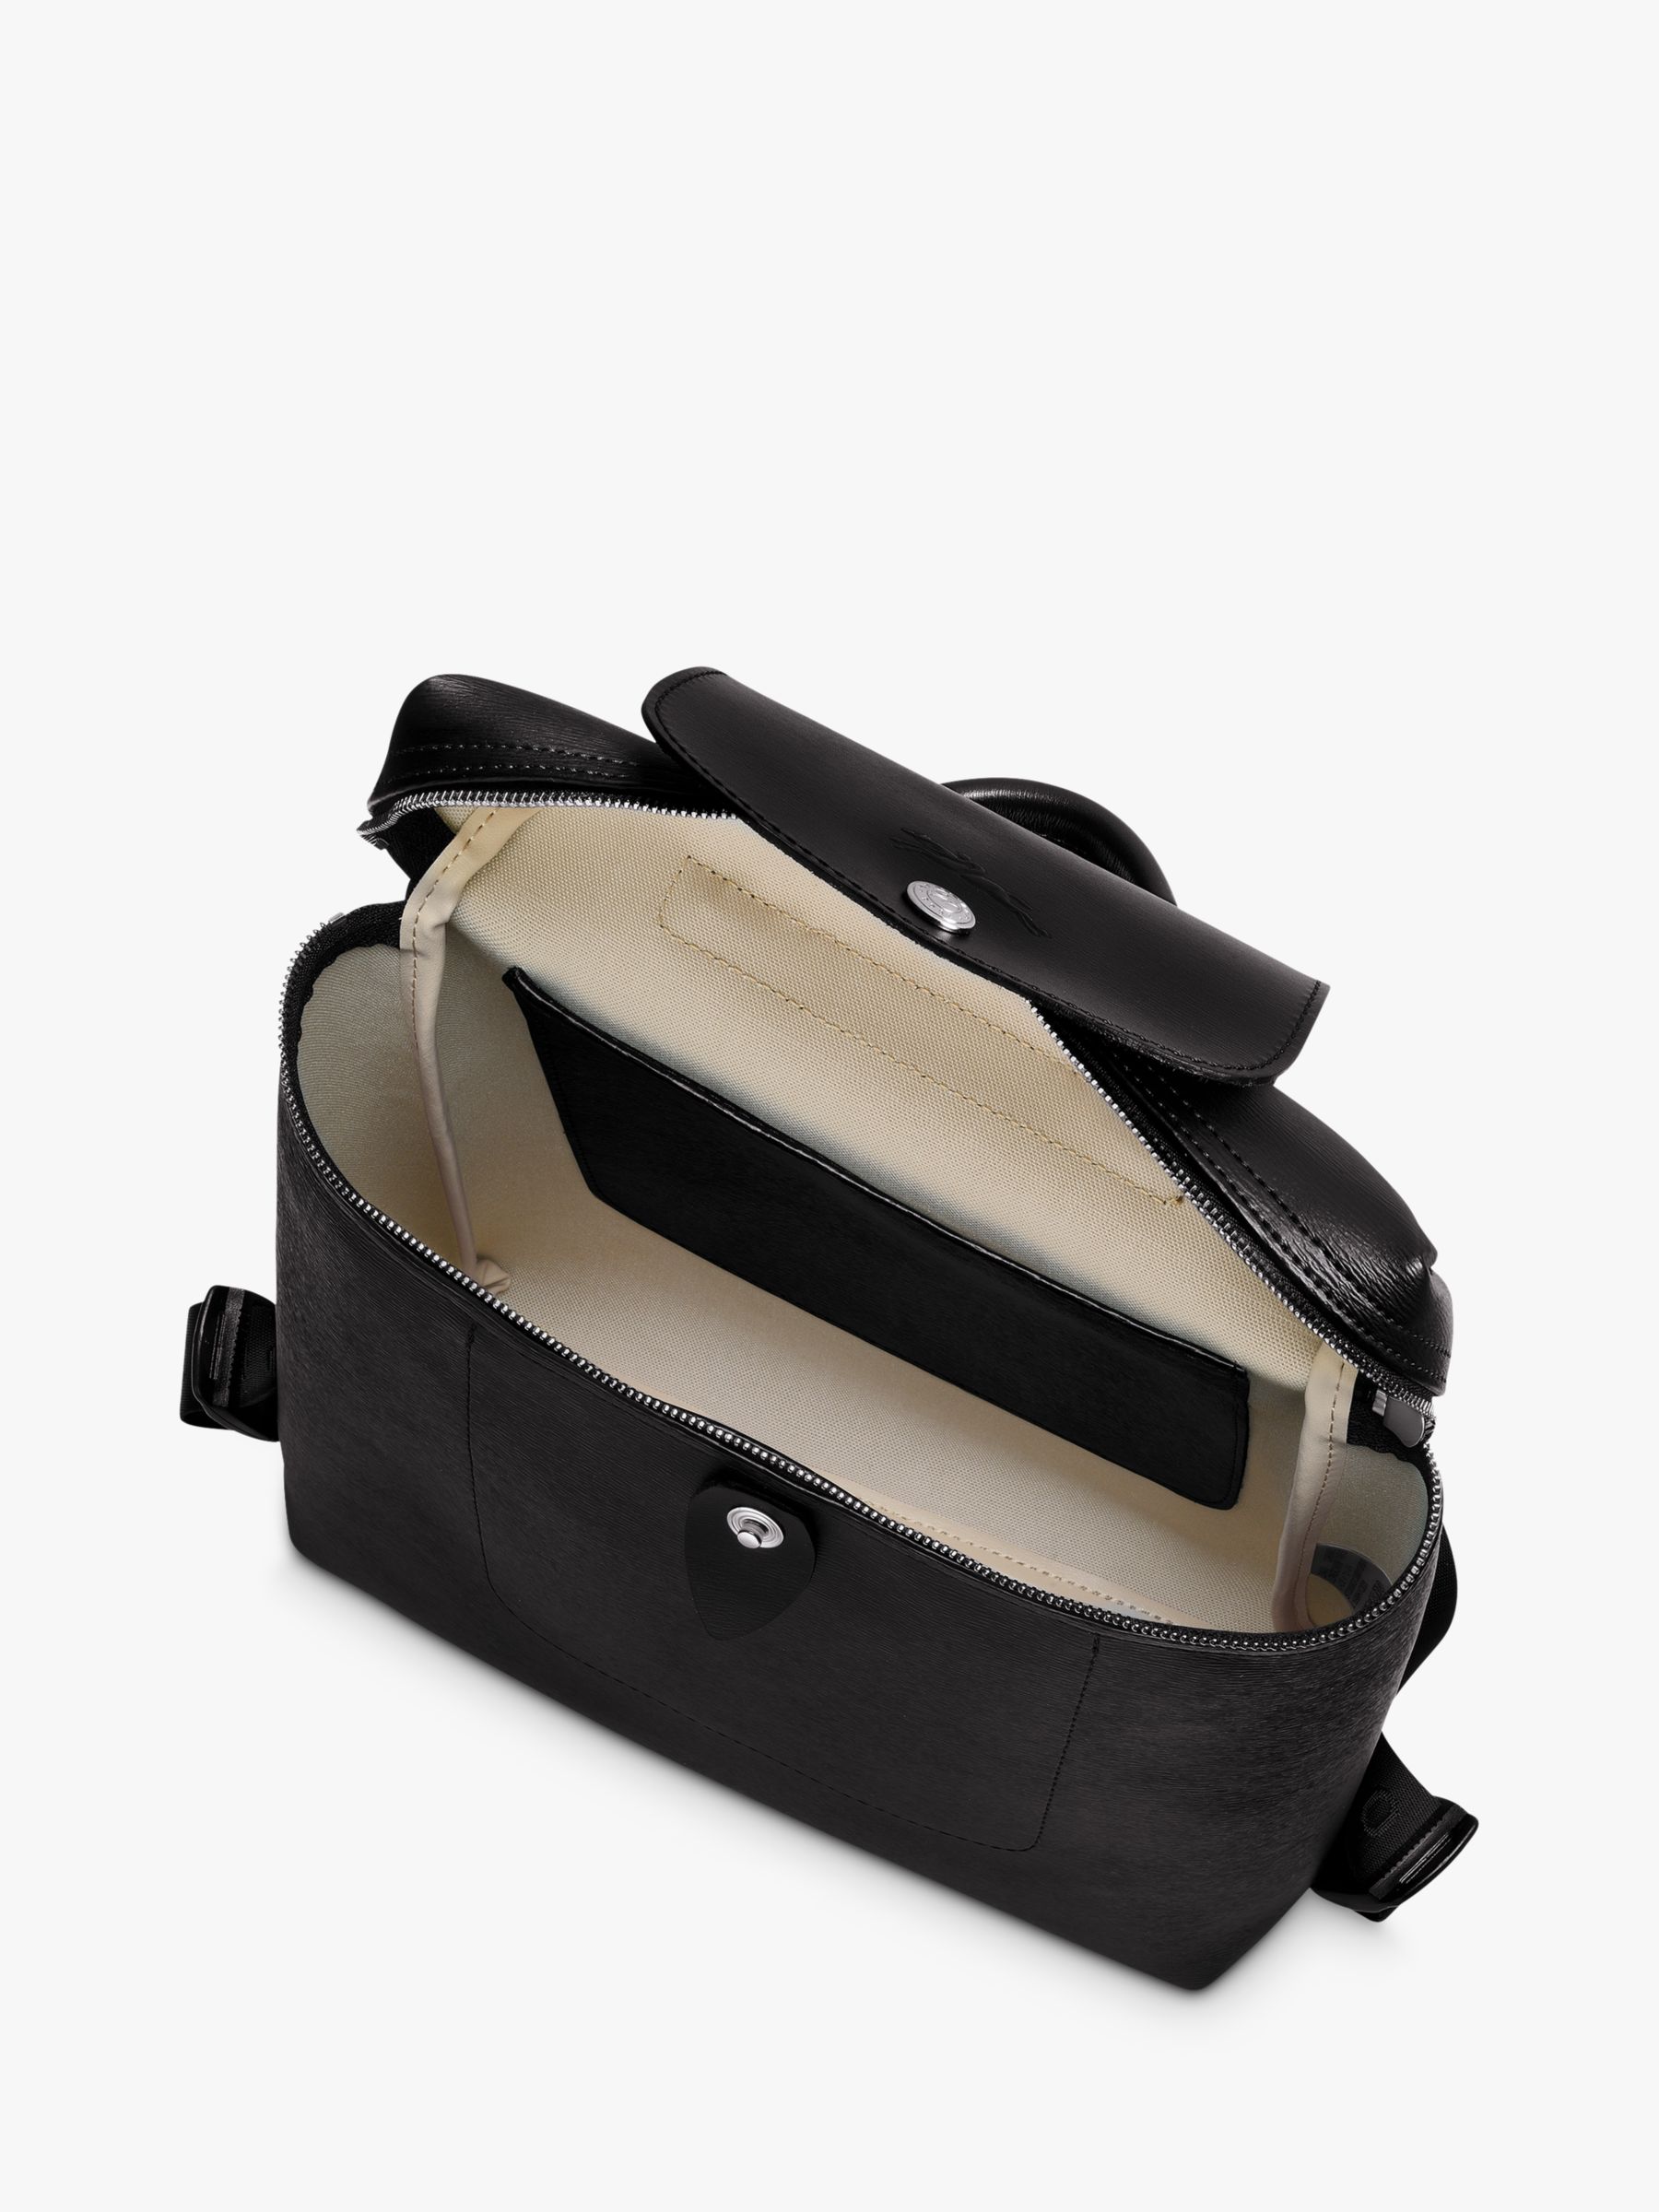 Longchamp Le Pliage Bag Review